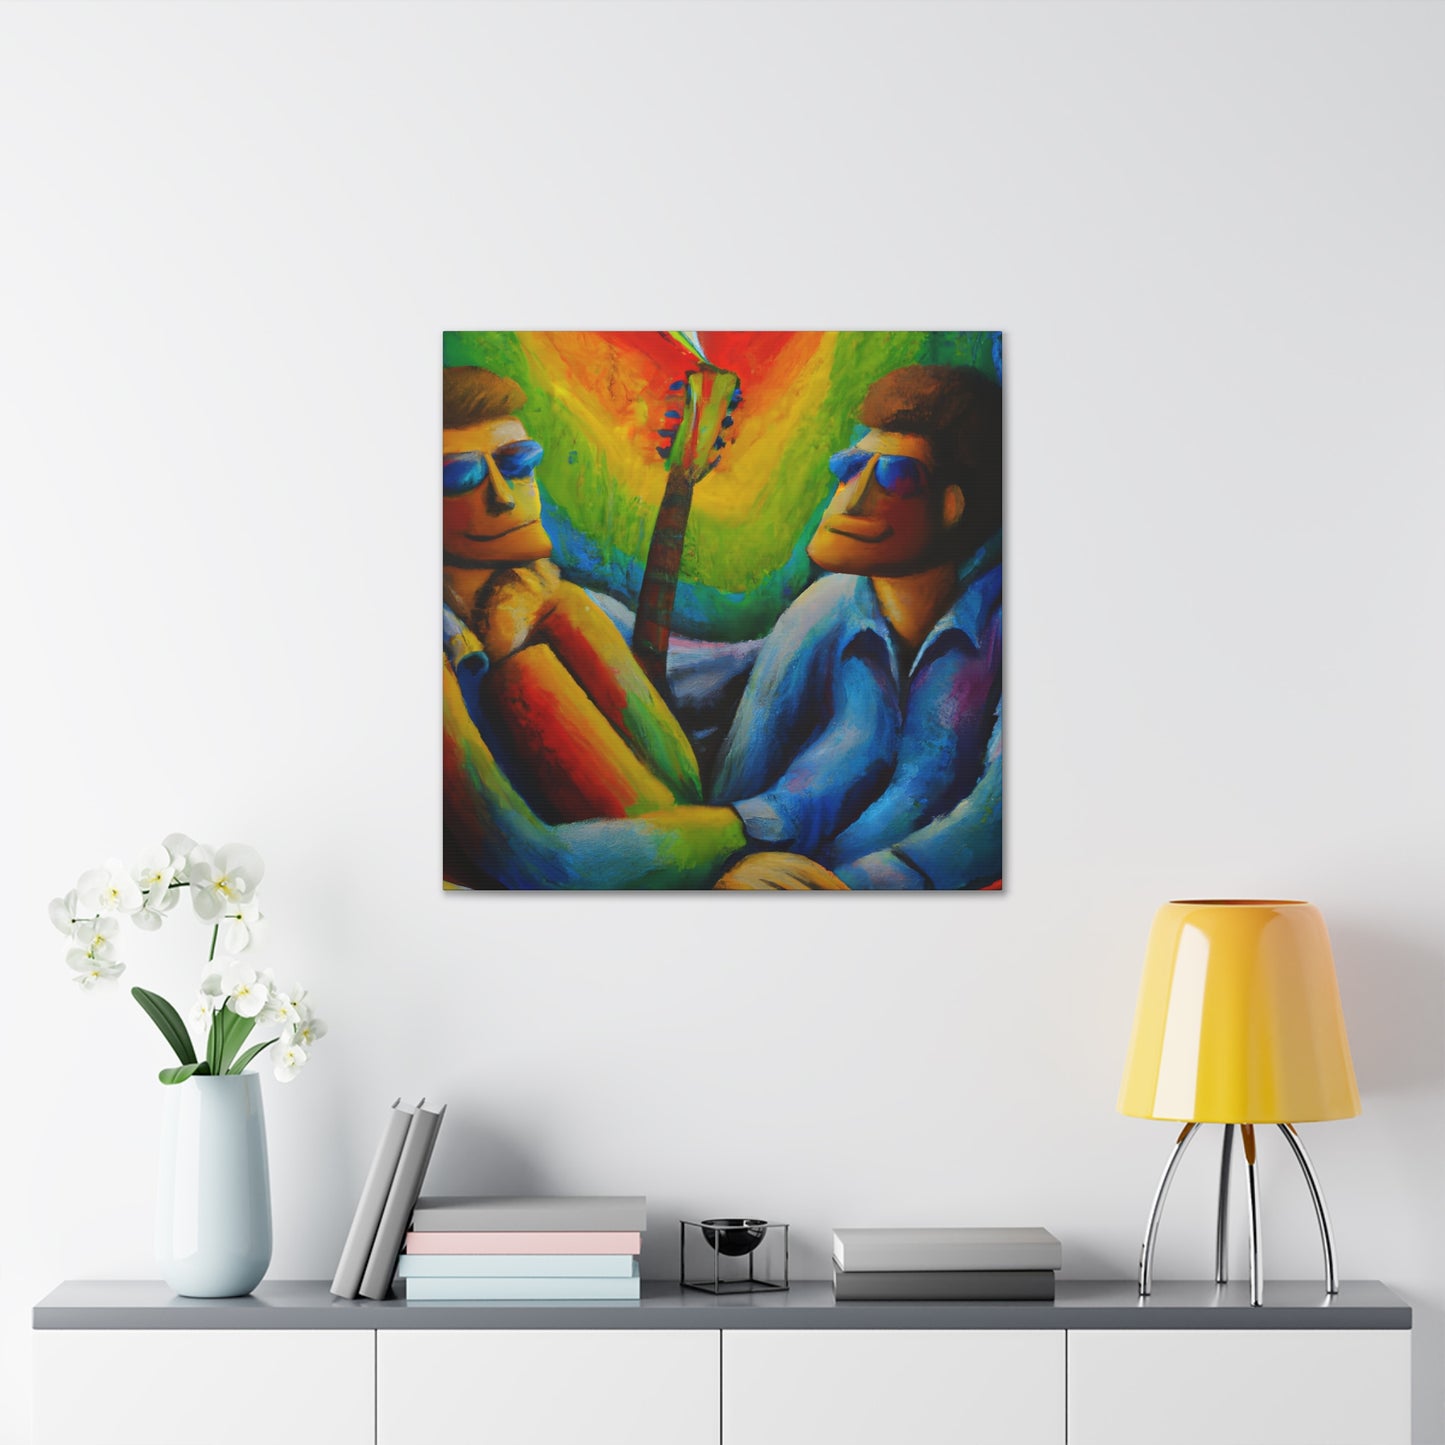 AlecX - Gay Love Canvas Art